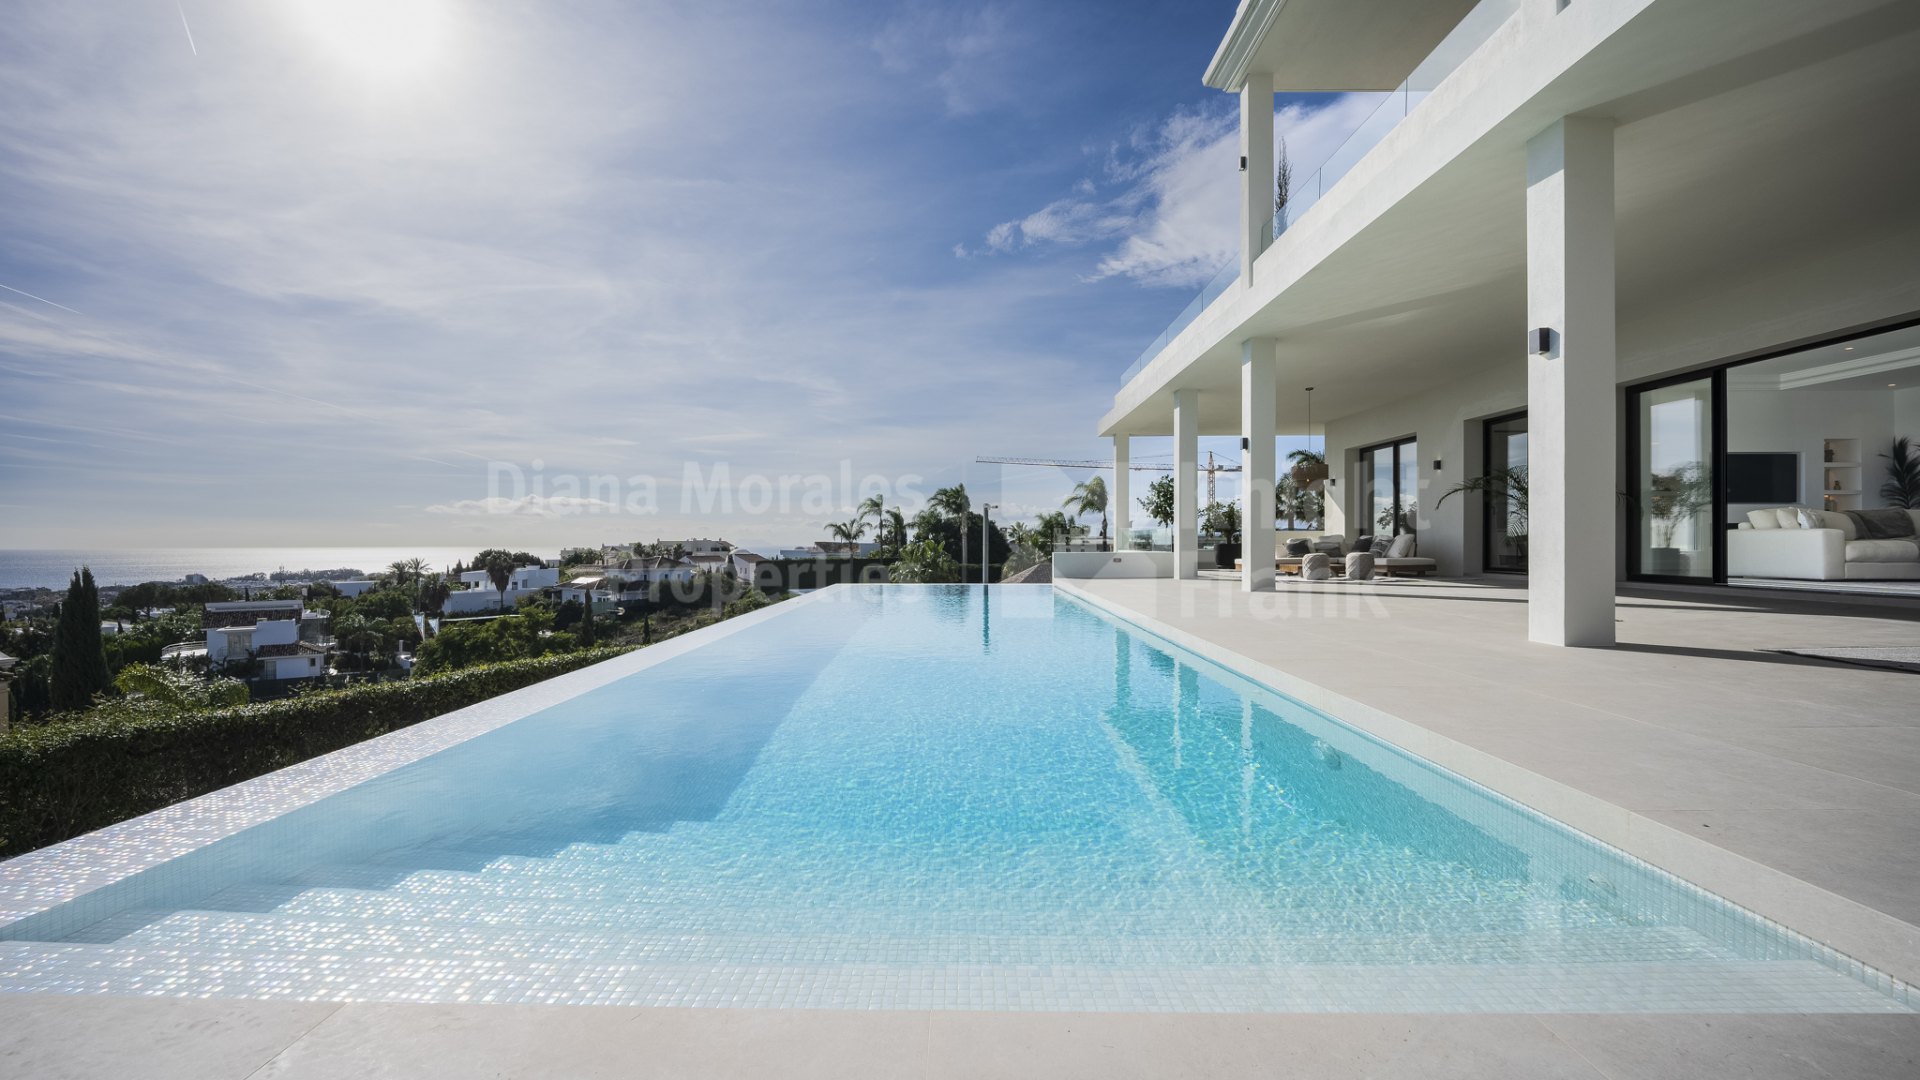 Los Flamingos, Villa im zeitgenössischen Stil mit atemberaubendem Blick auf die Mittelmeerküste